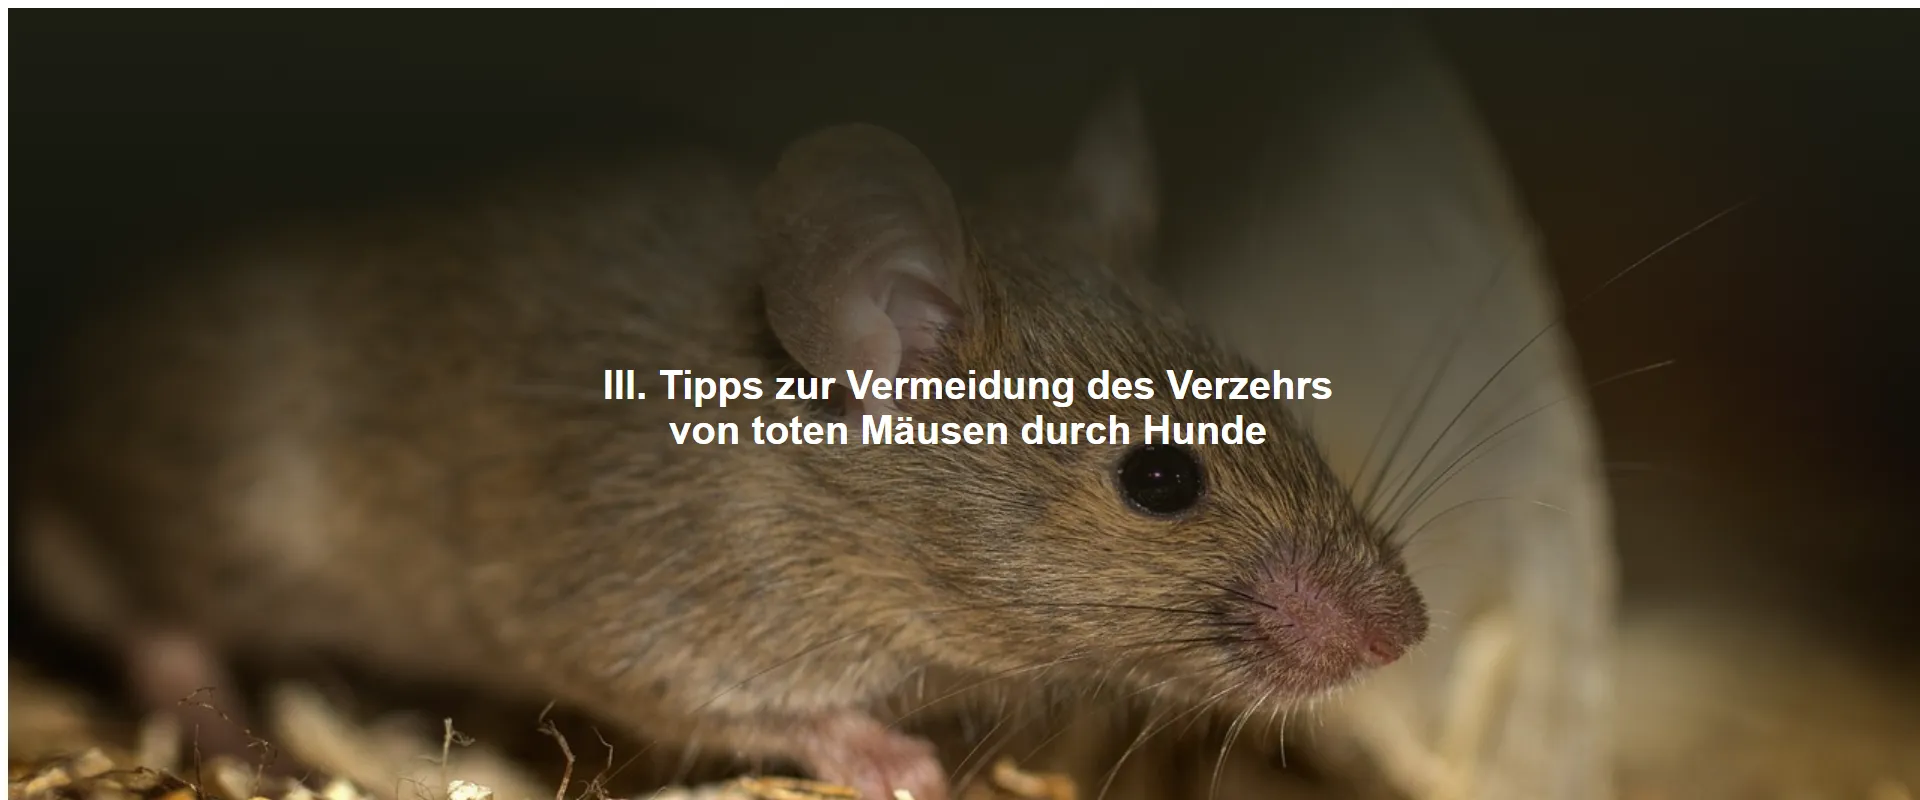 Tipps zur Vermeidung des Verzehrs von toten Mäusen durch Hunde